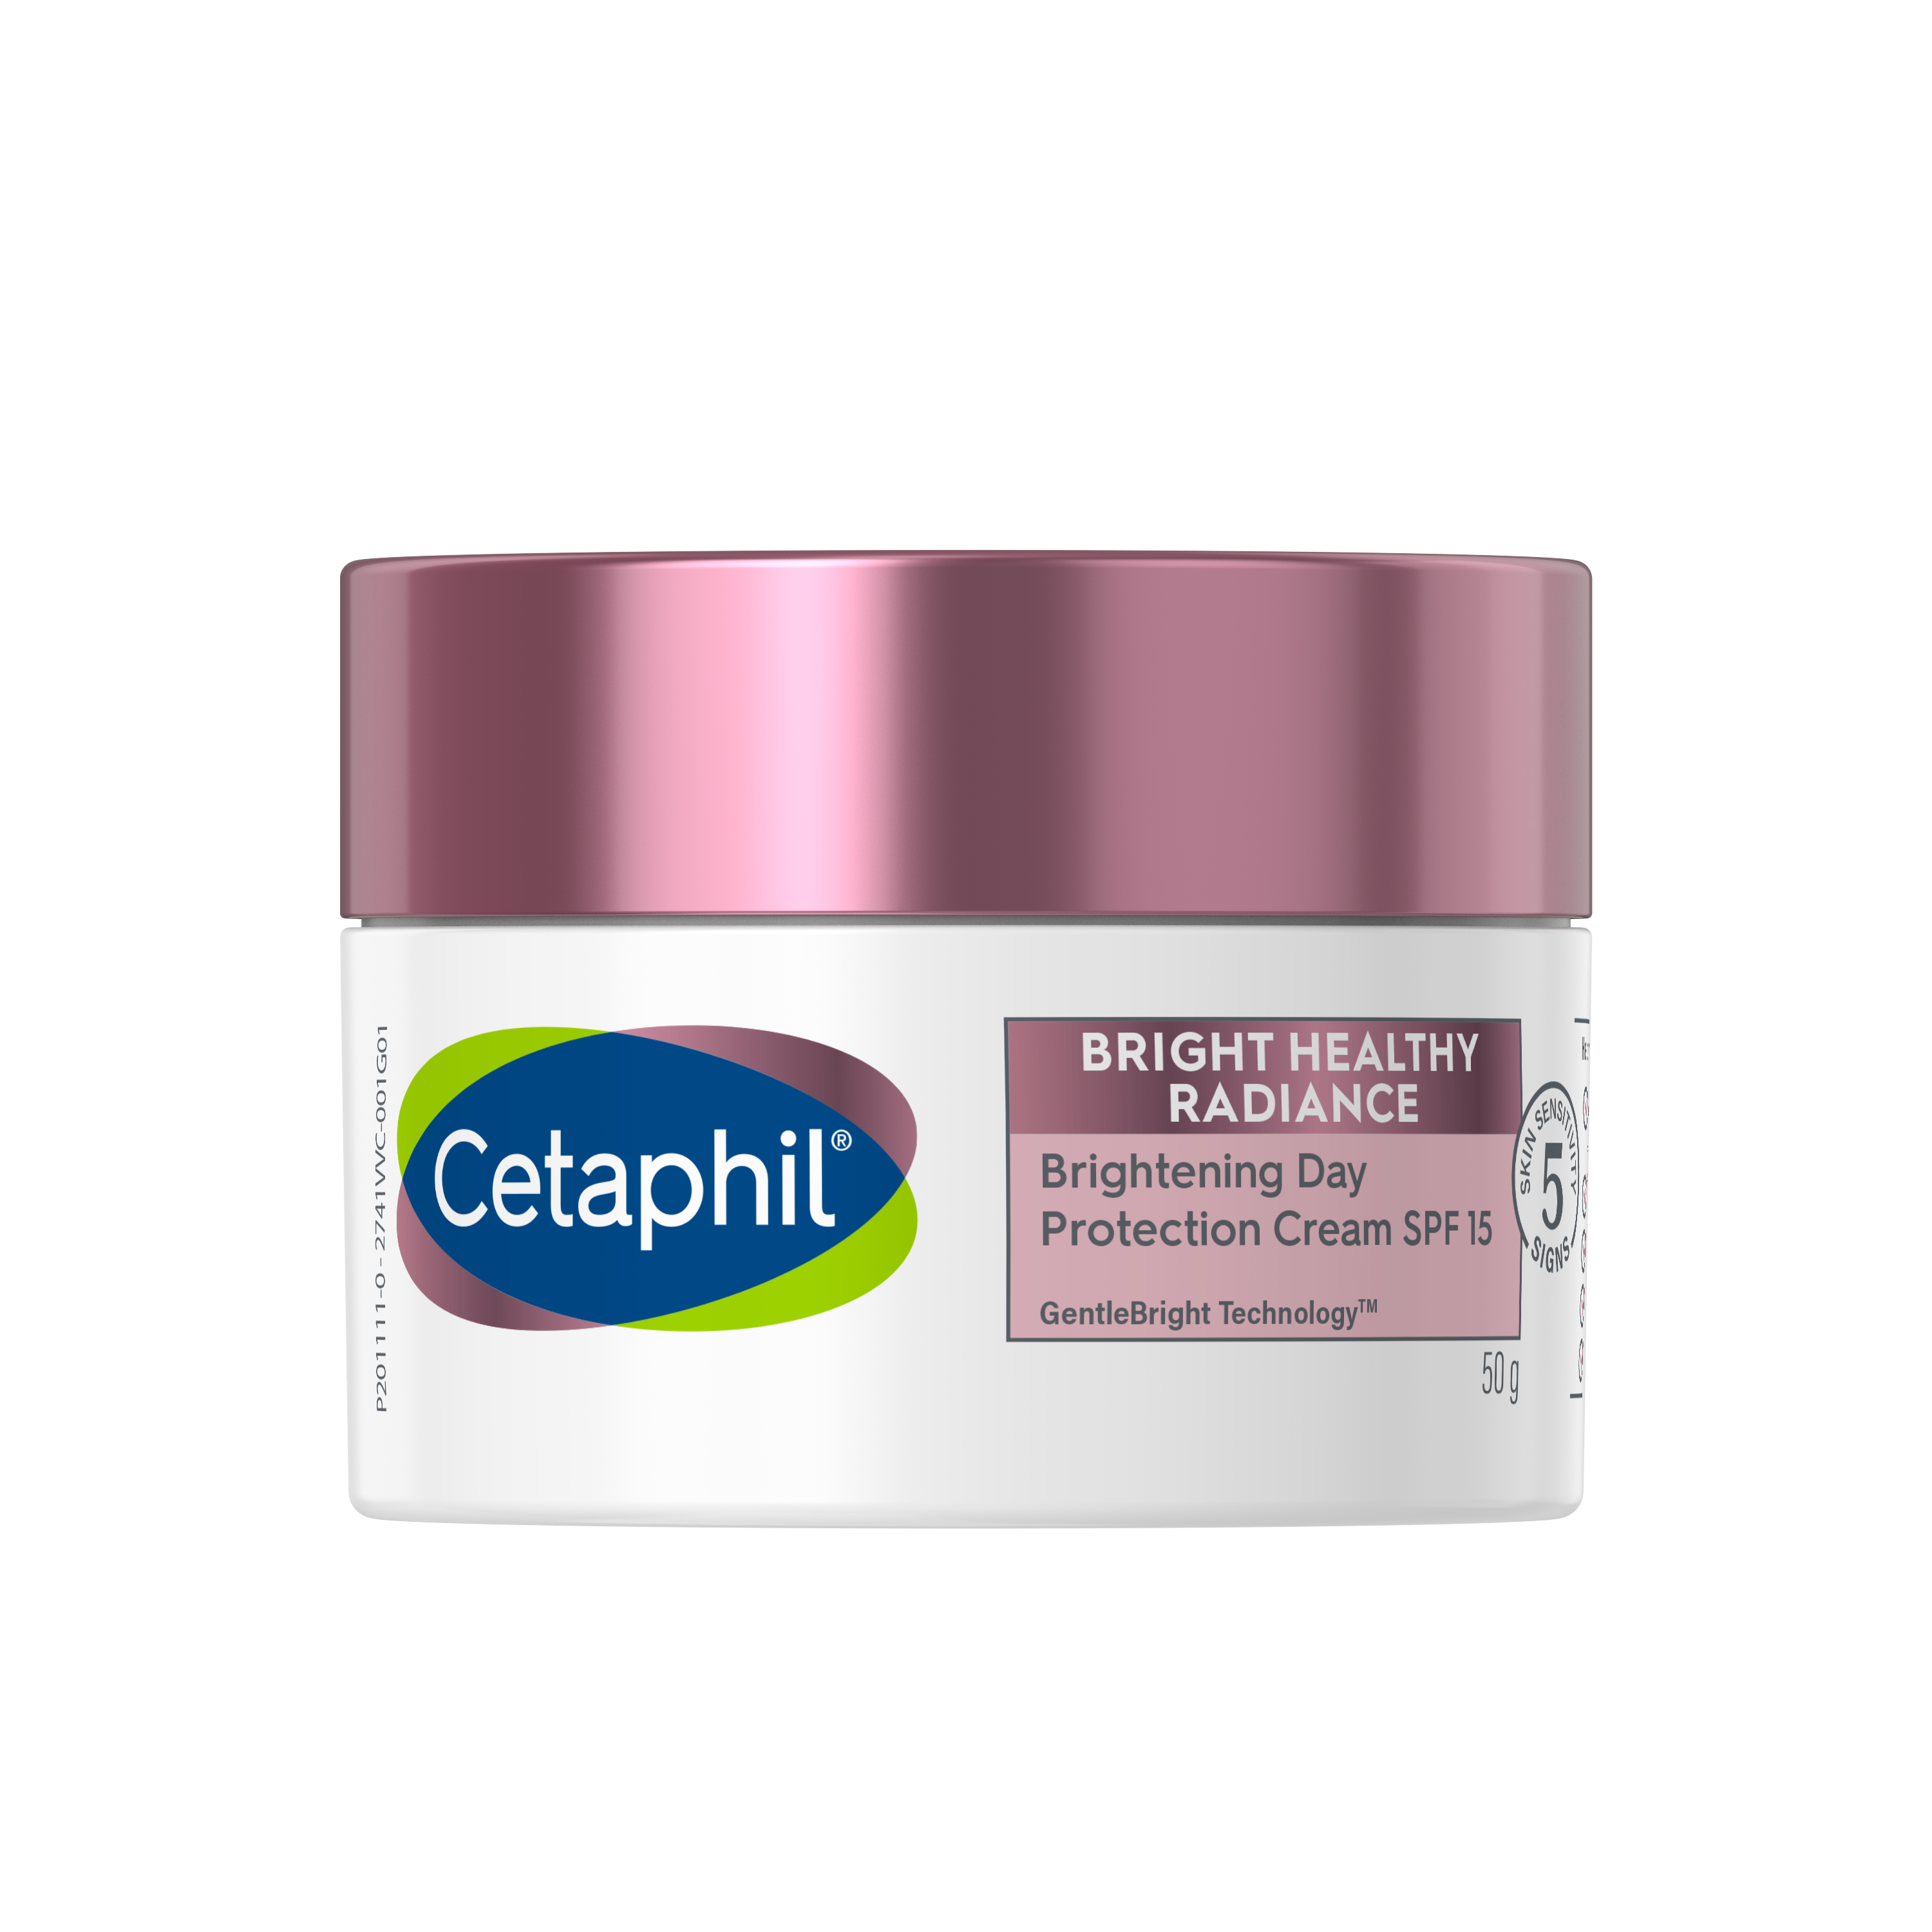 Kem dưỡng ẩm làm sáng da ban ngày cho da nhạy cảm Cetaphil Bright Healthy Radiance Day Protection Cream SPF15